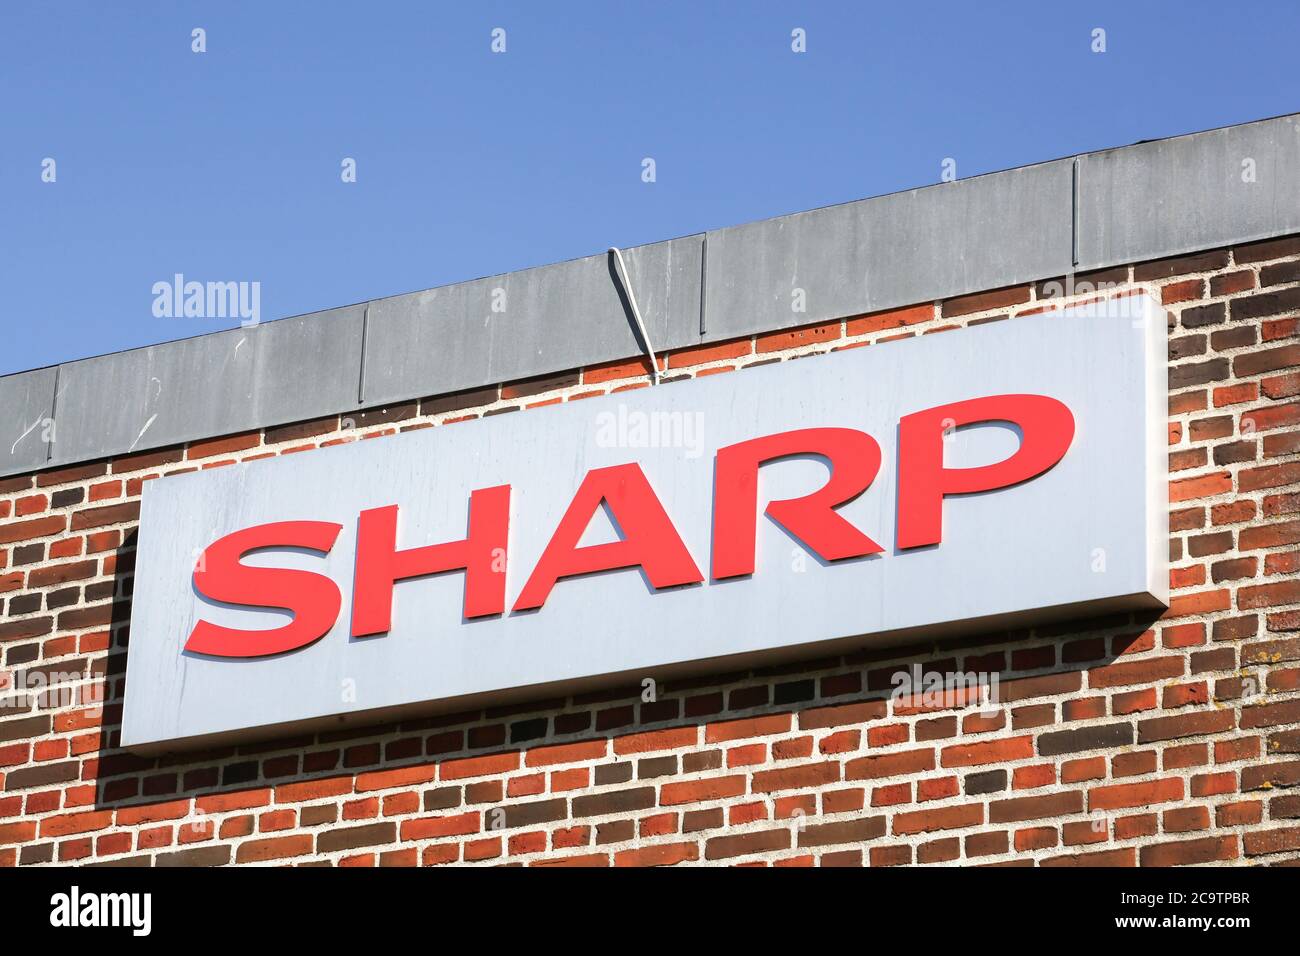 Ega, Dänemark - 11. Mai 2019: Scharfes Logo auf einer Fassade. Sharp ist ein japanisches multinationales Unternehmen, das elektronische Produkte entwickelt und herstellt Stockfoto